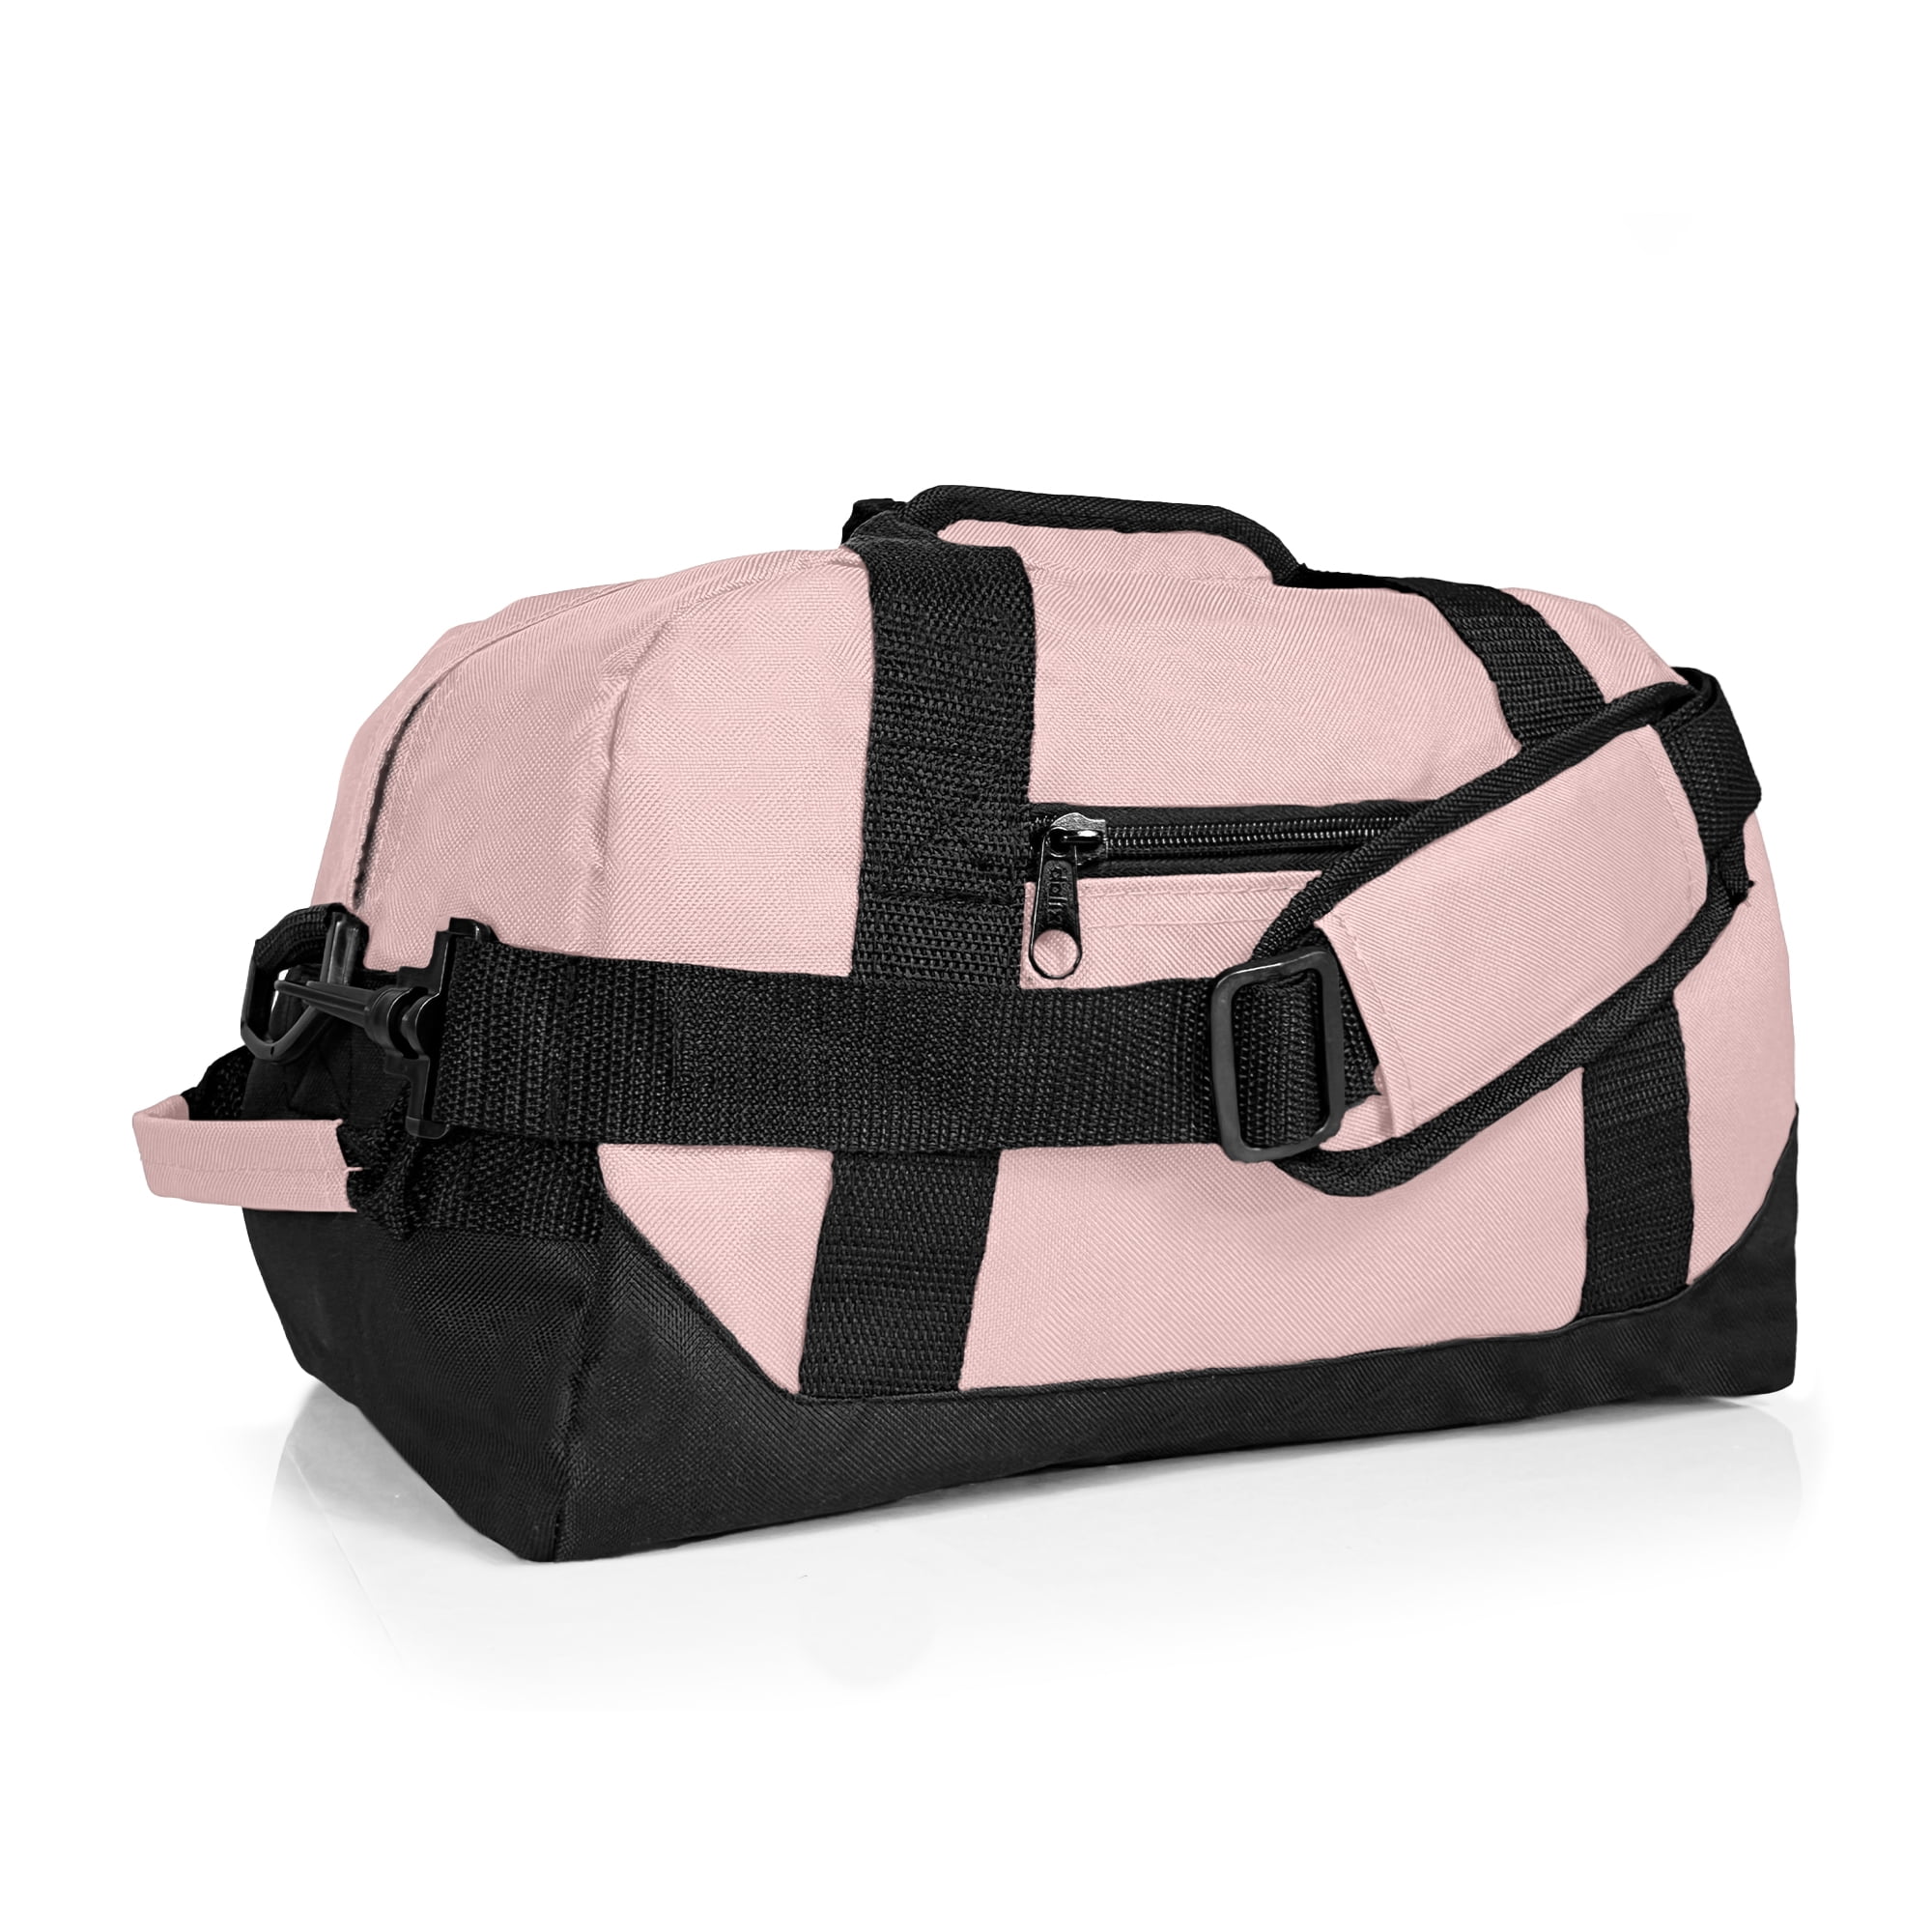 bb bag pink